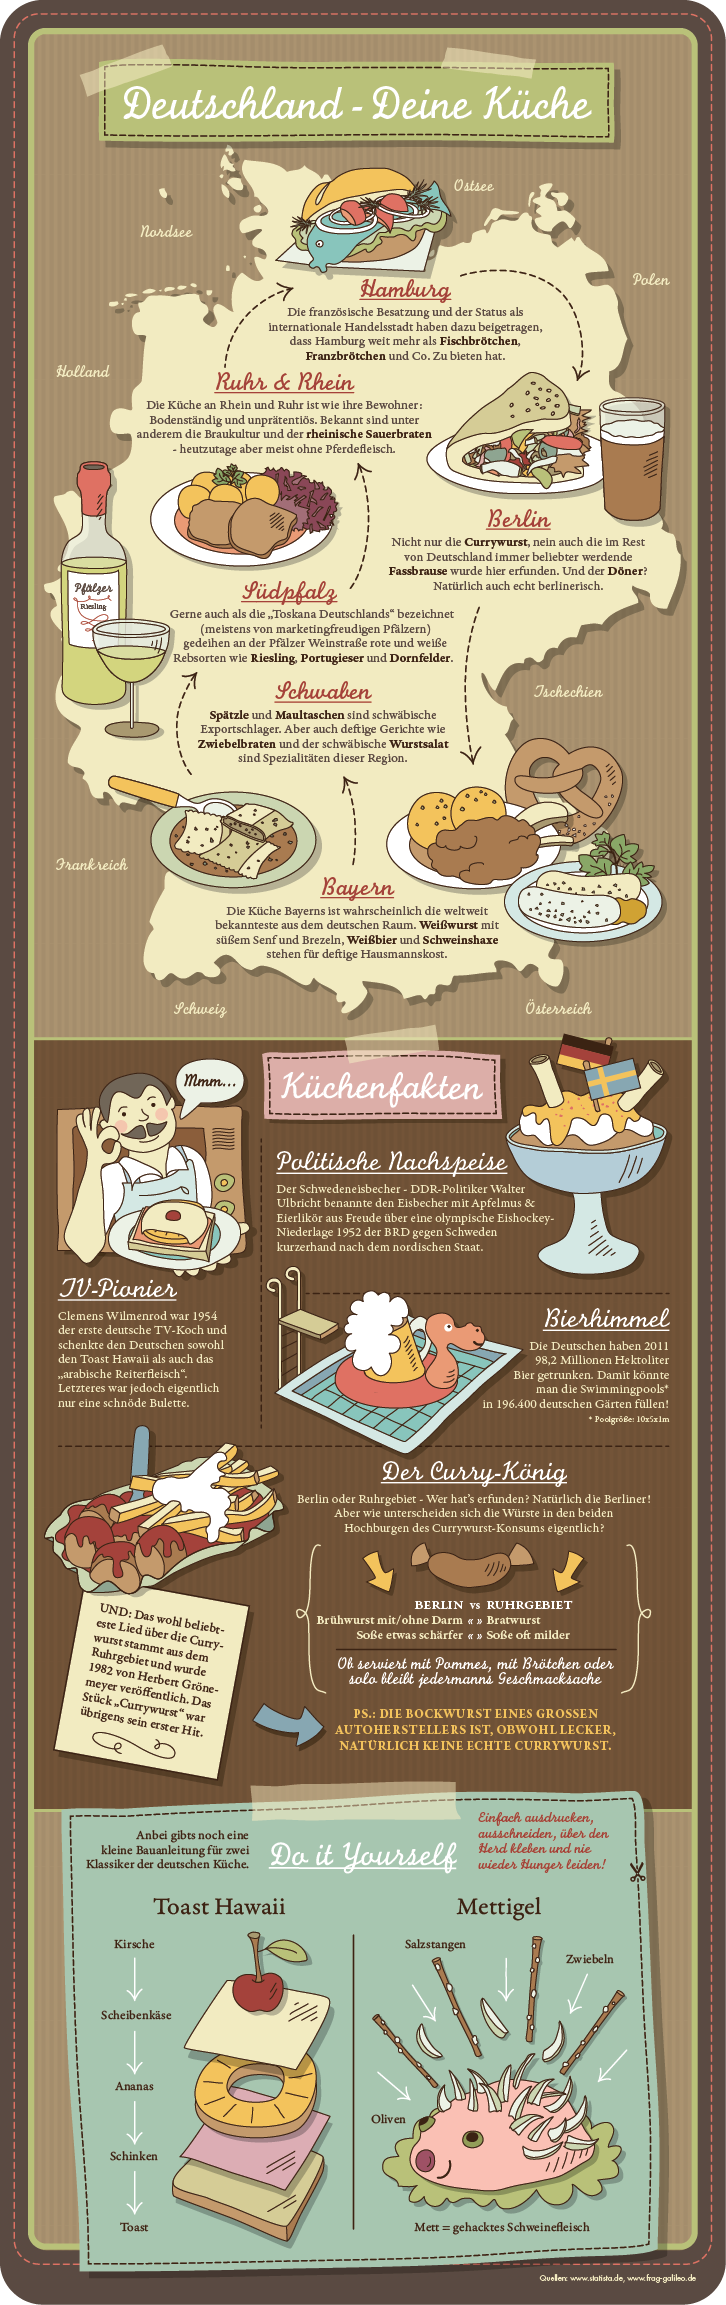 Infografik: Die deutsche Küche im Überblick